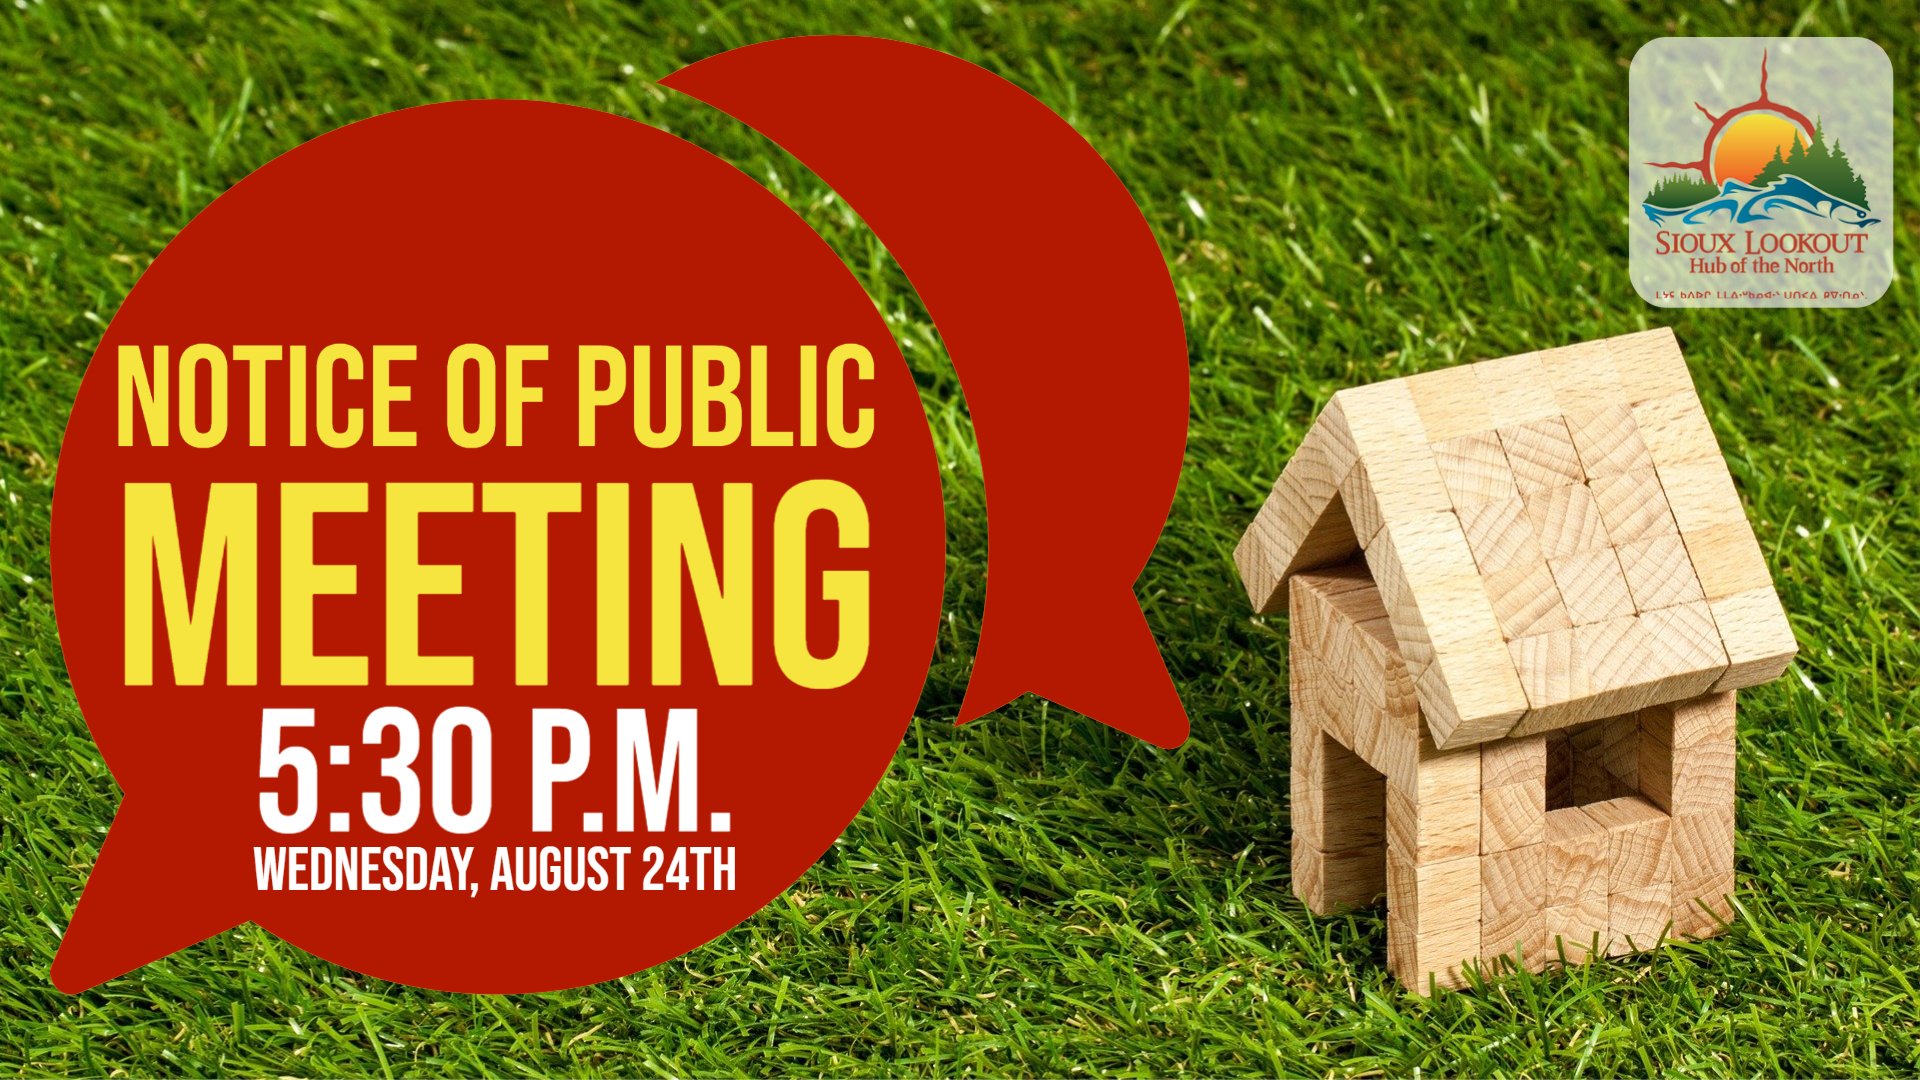 Notice of public meeting